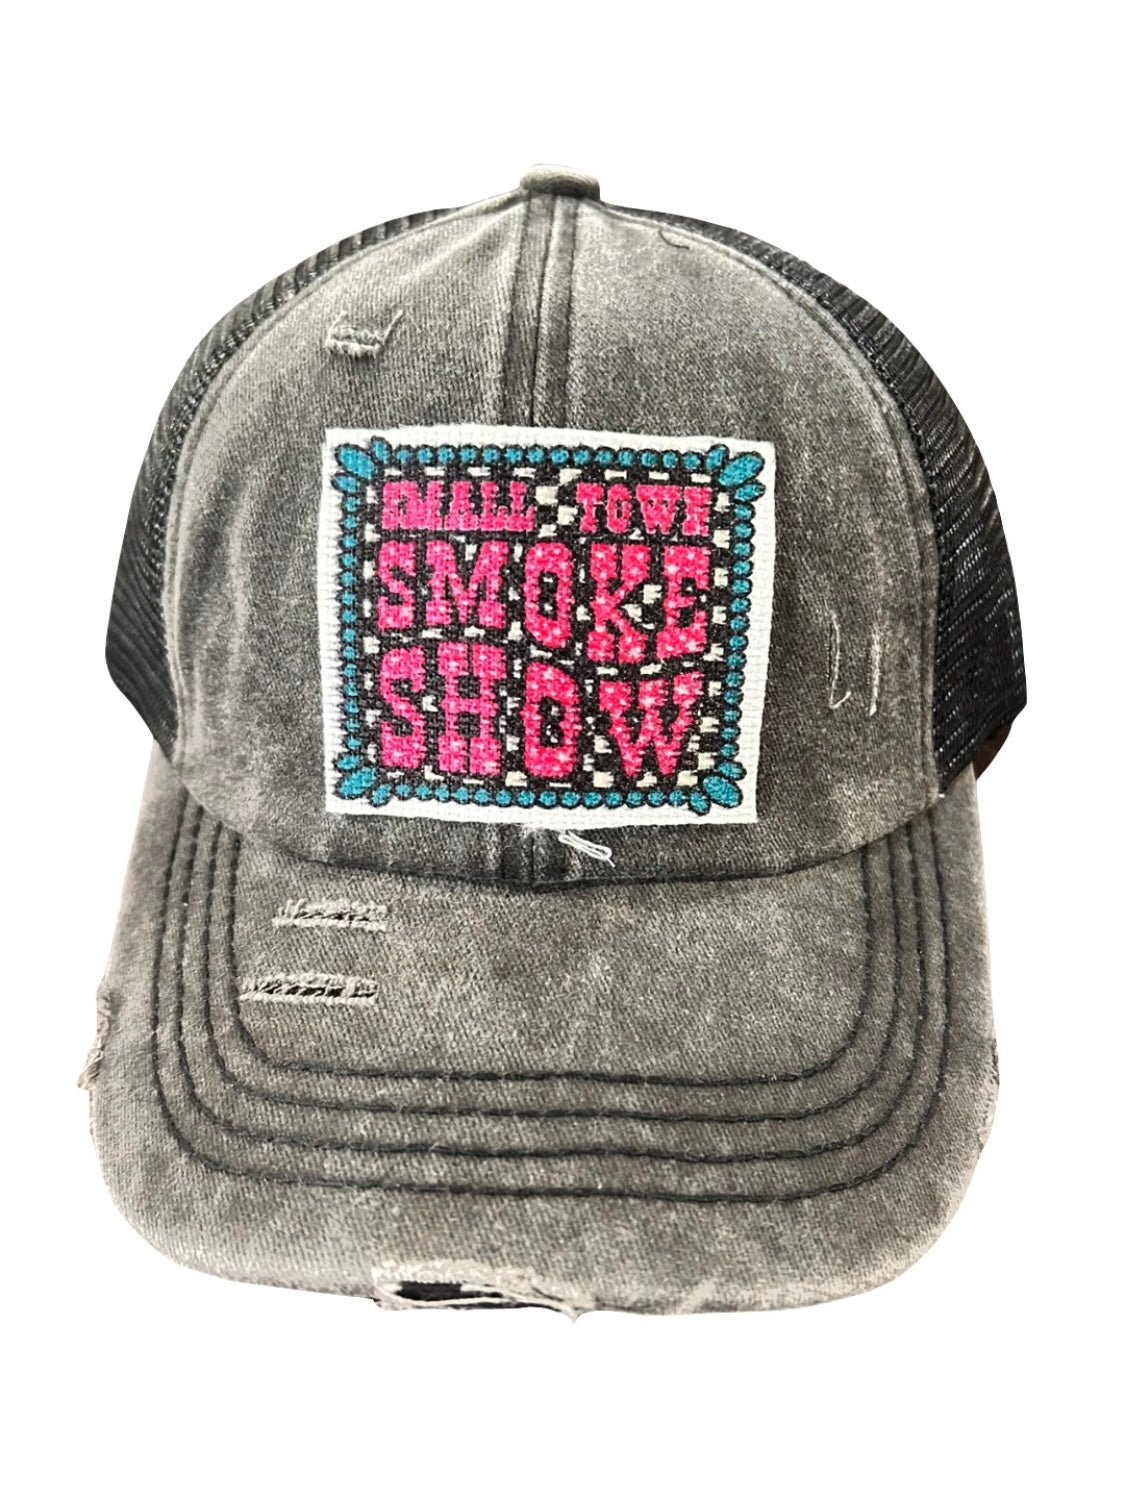 Smoke Show Ball Cap - Hey Heifer Boutique